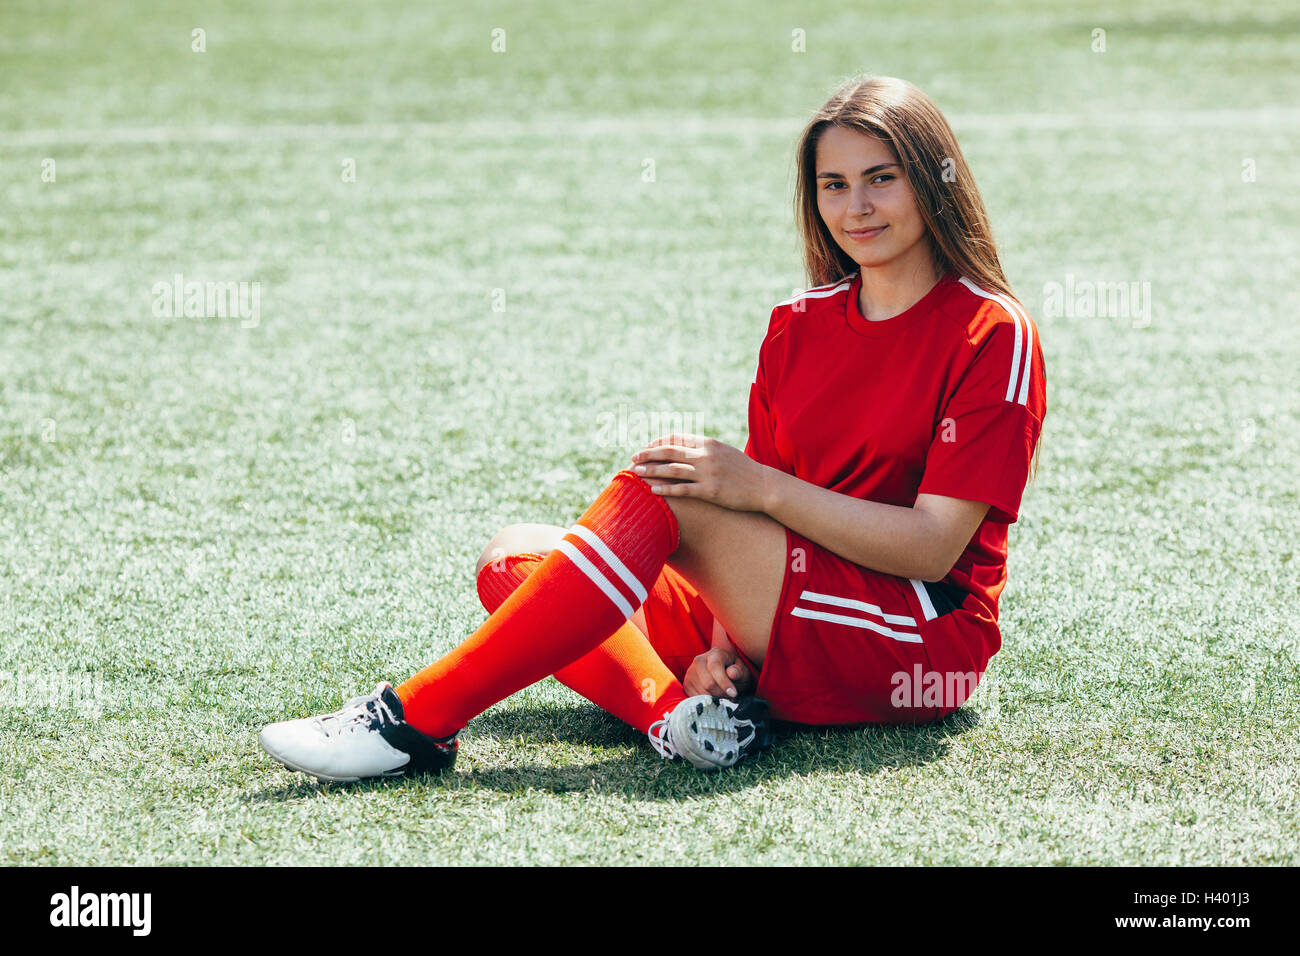 Retrato de alegre futbolista adolescente sentado en campo Foto de stock